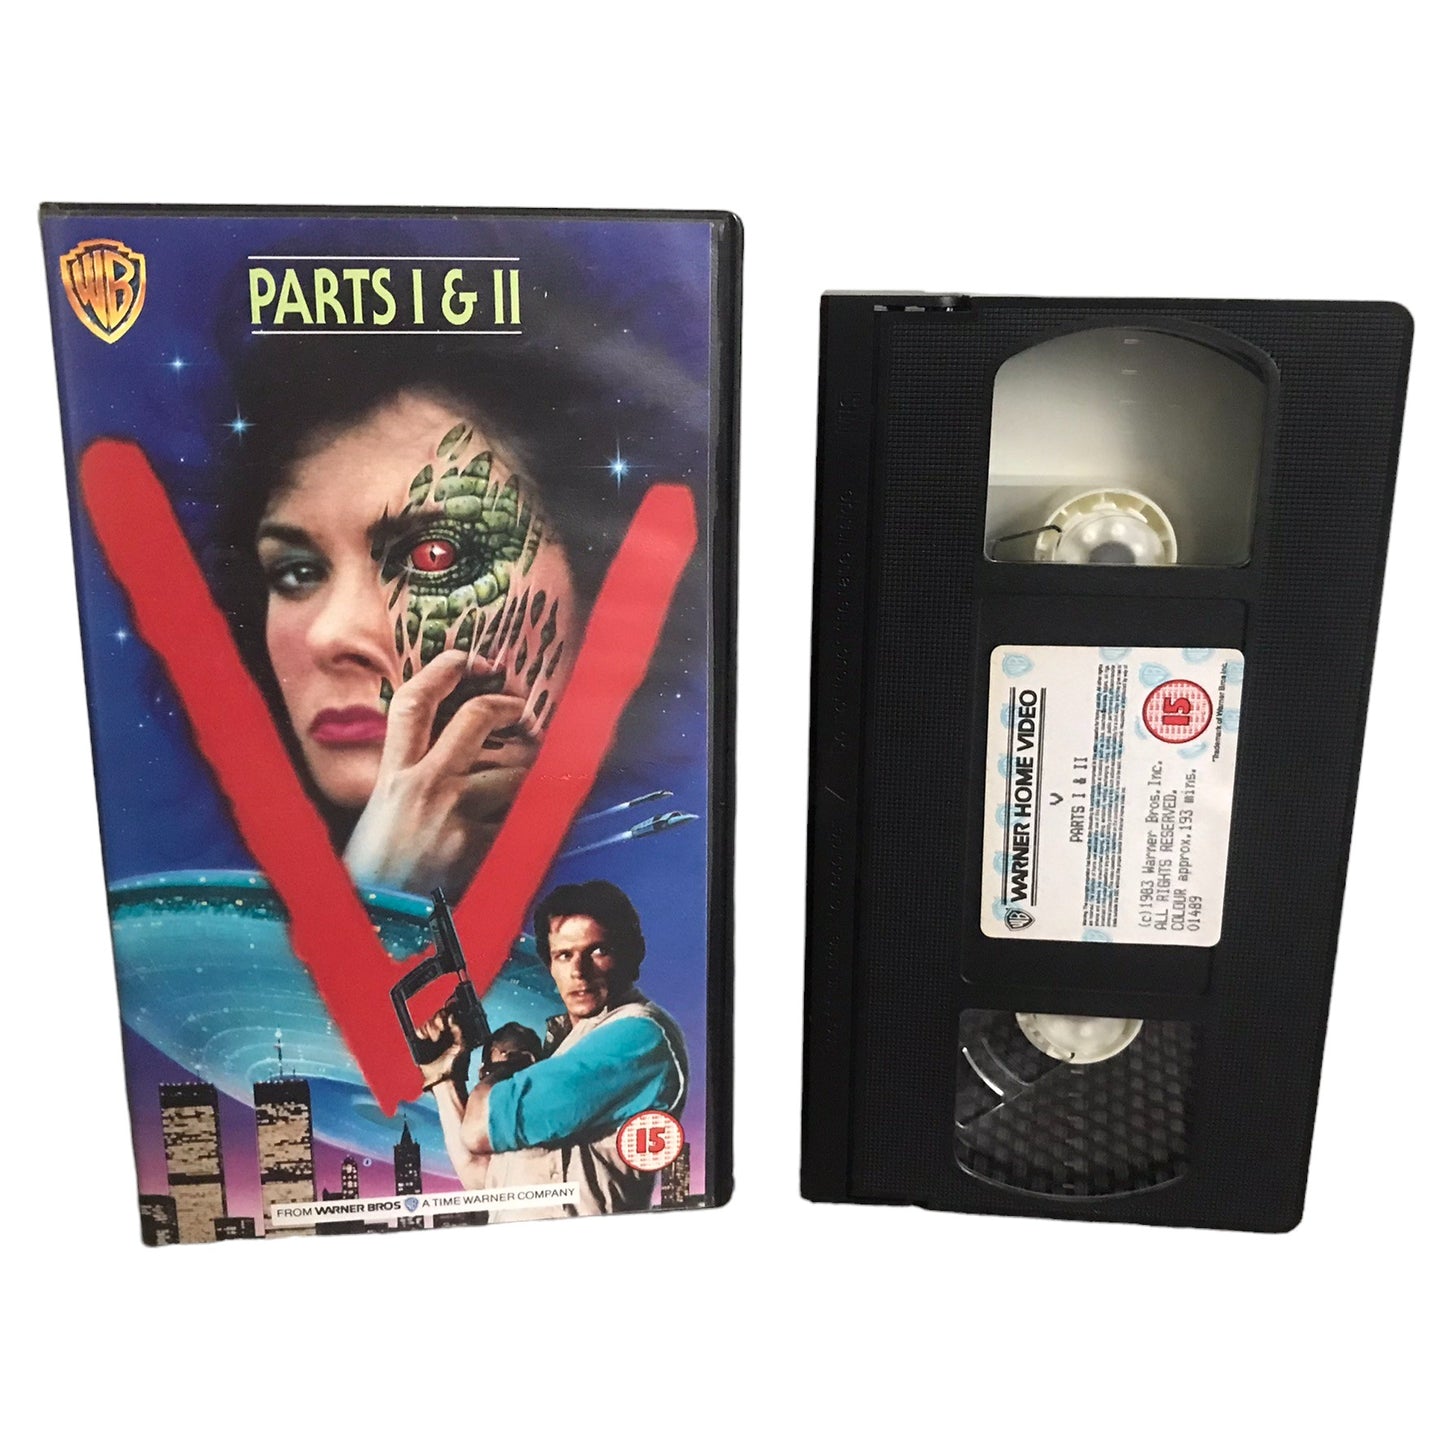 V Parts 1 & 2 - Jane Badler - Warner Home Video - Sci-Fi - Pal - VHS-